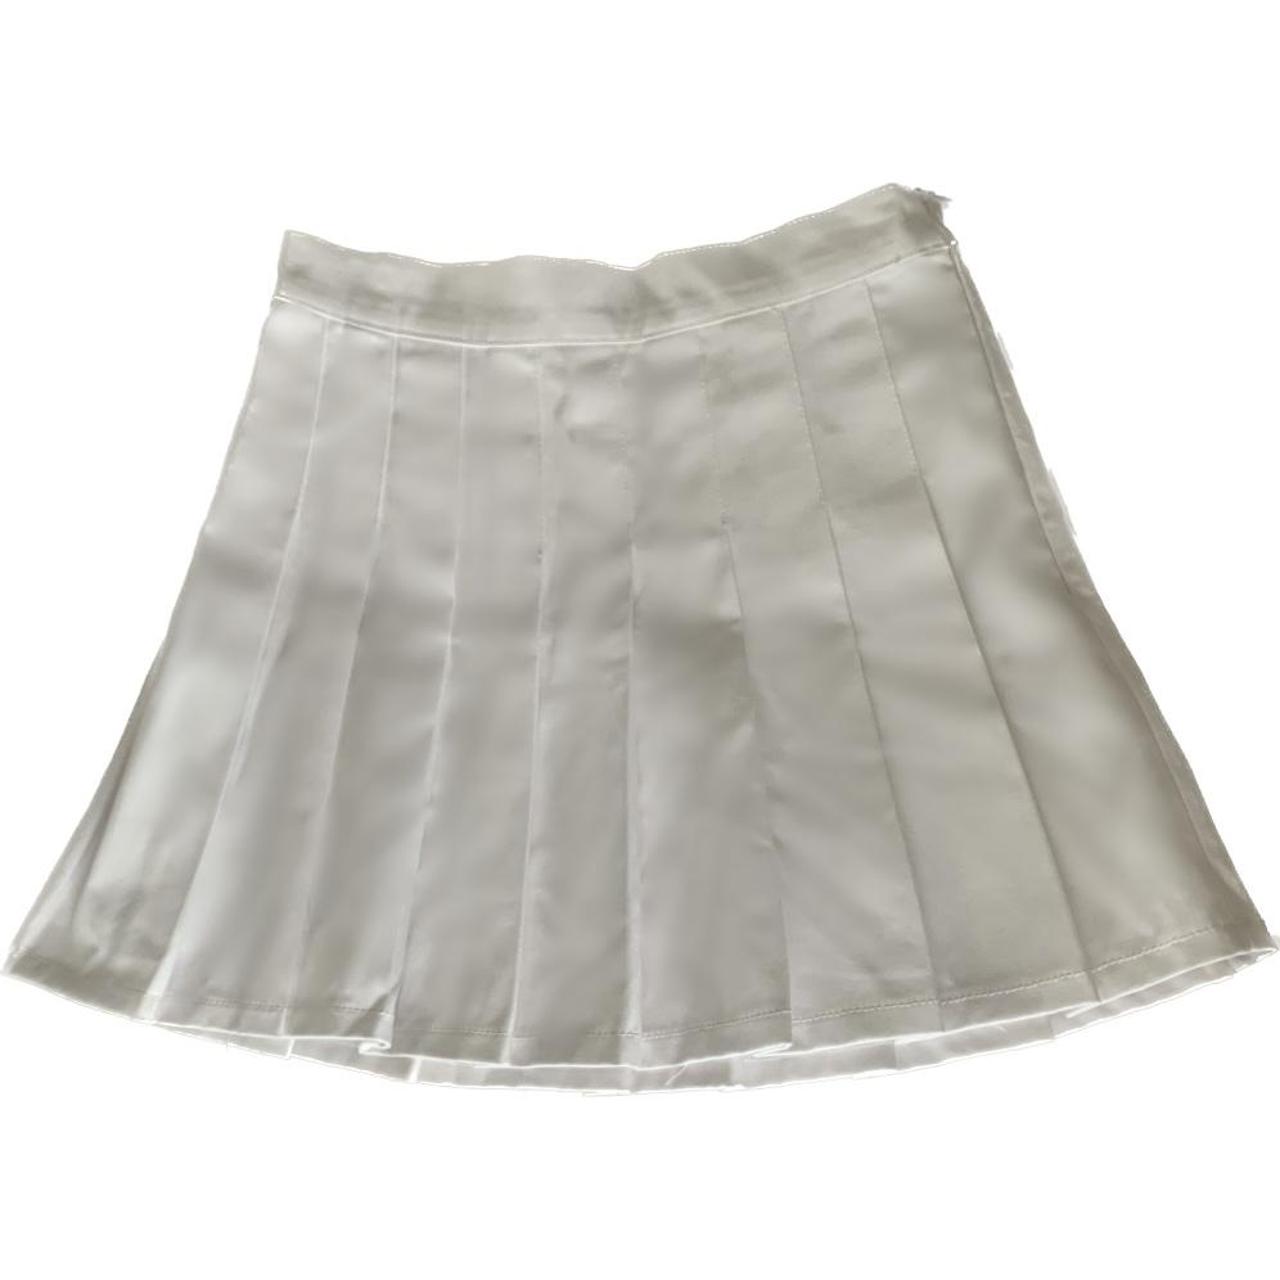 white pleated skirt 🦢 27in waist/15in length ... - Depop